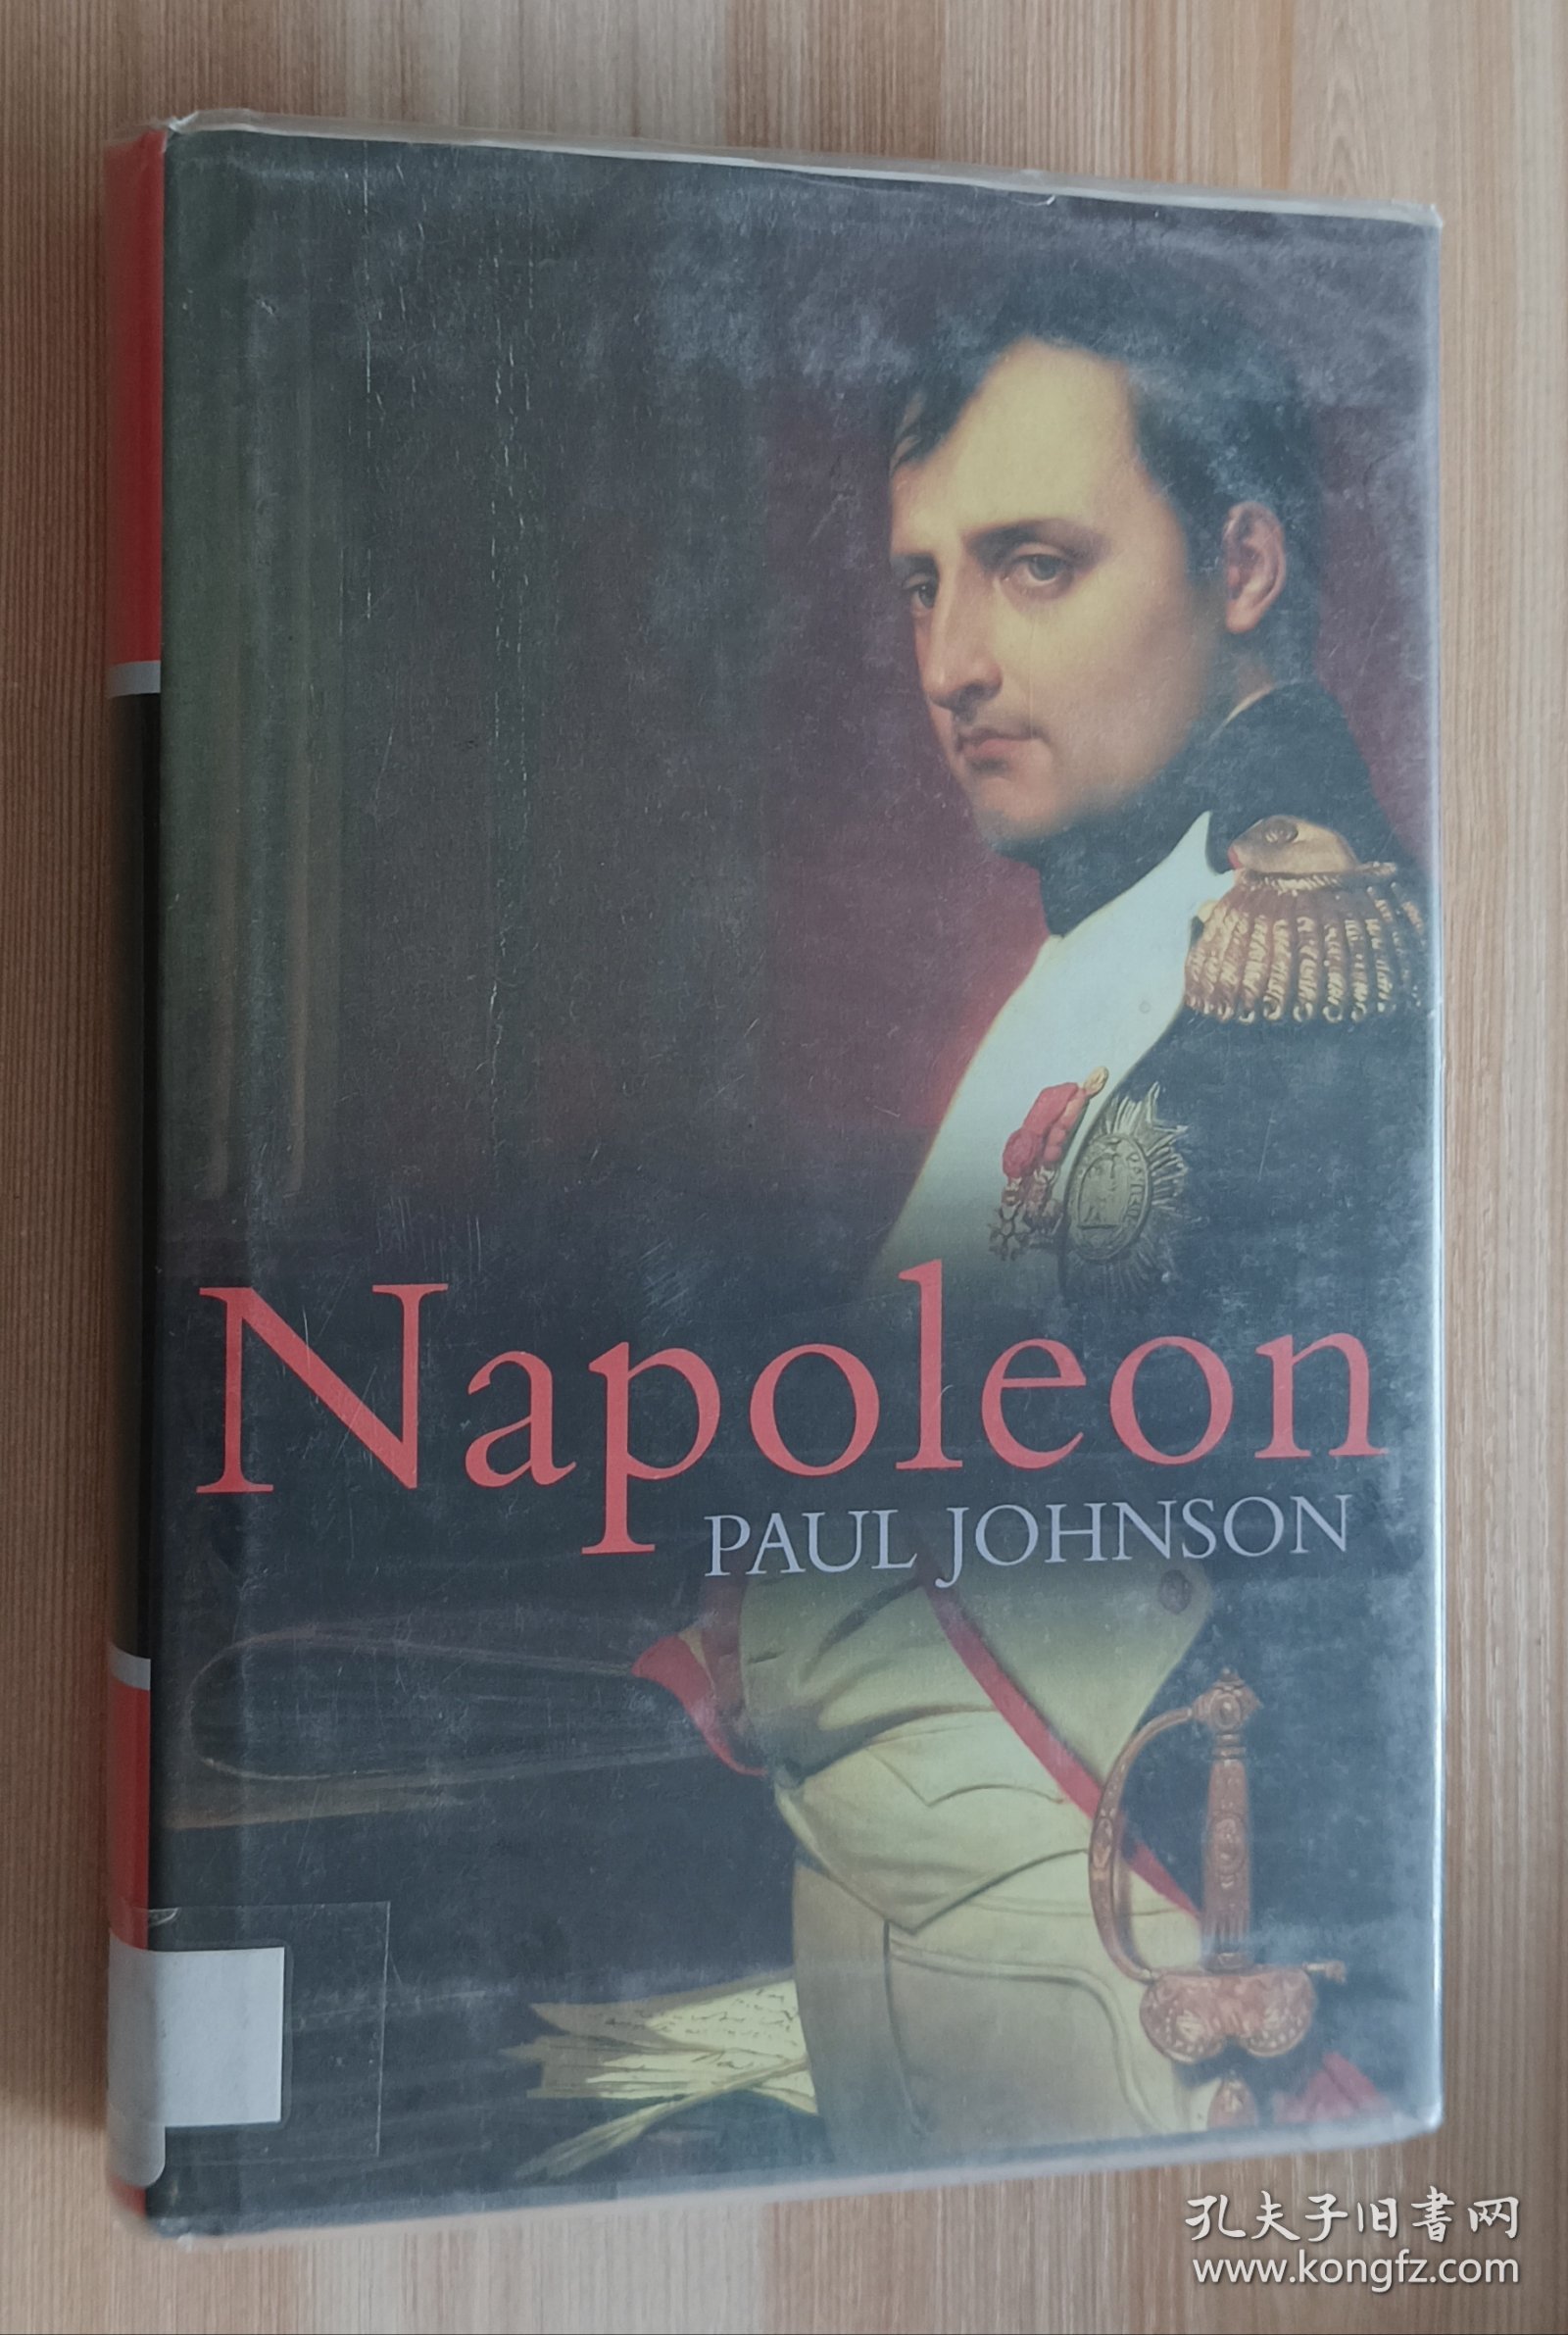 英文书 Napoleon by Paul Johnson (Author)